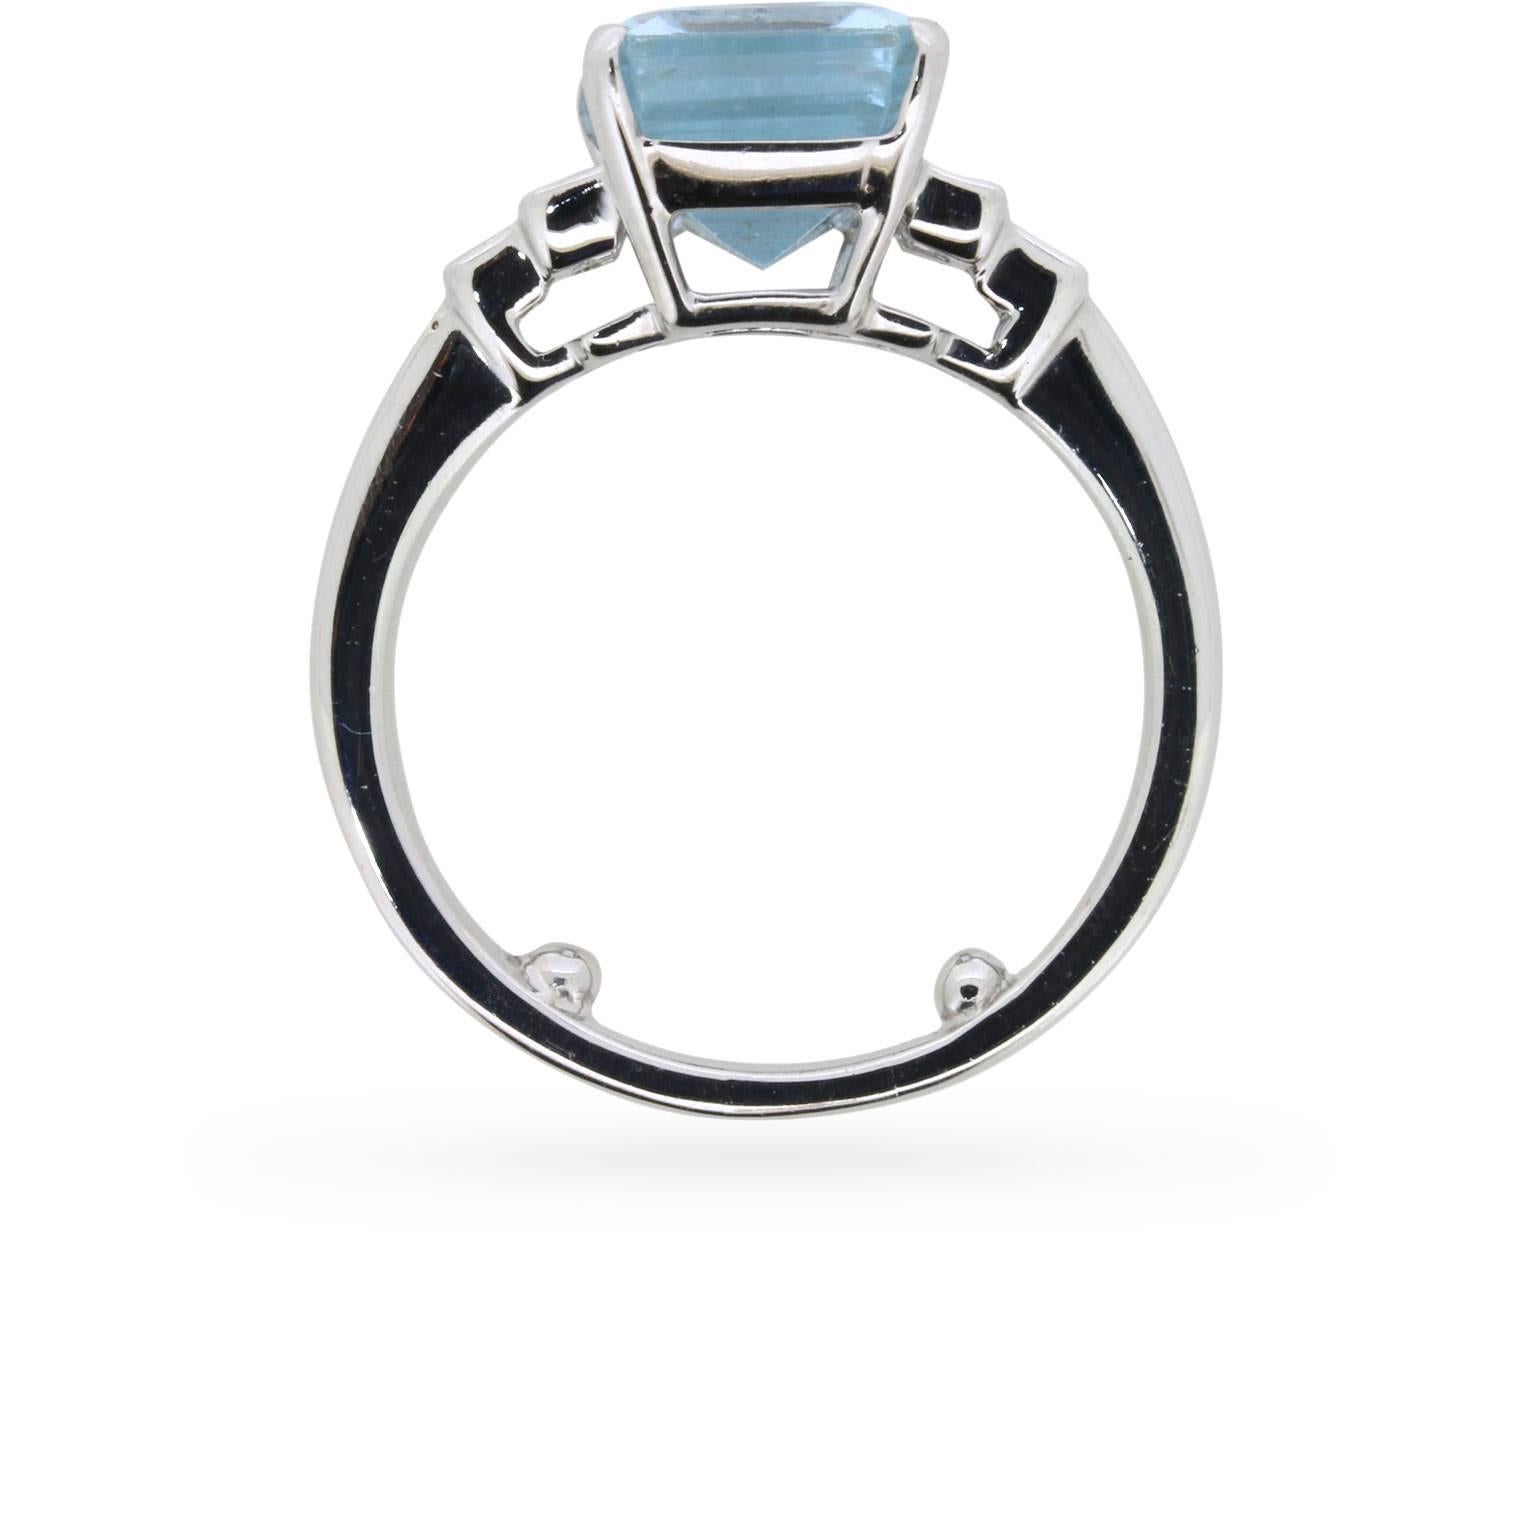 Dieser fabelhafte Vintage-Ring aus den 1960er Jahren mit starkem Art-déco-Einfluss trägt einen Aquamarin mit 4,35 Karat im Smaragdschliff zwischen gestuften Schultern.

Der Ring ist in 18 Karat Weißgold gefasst. Die Schultern des Rings sind